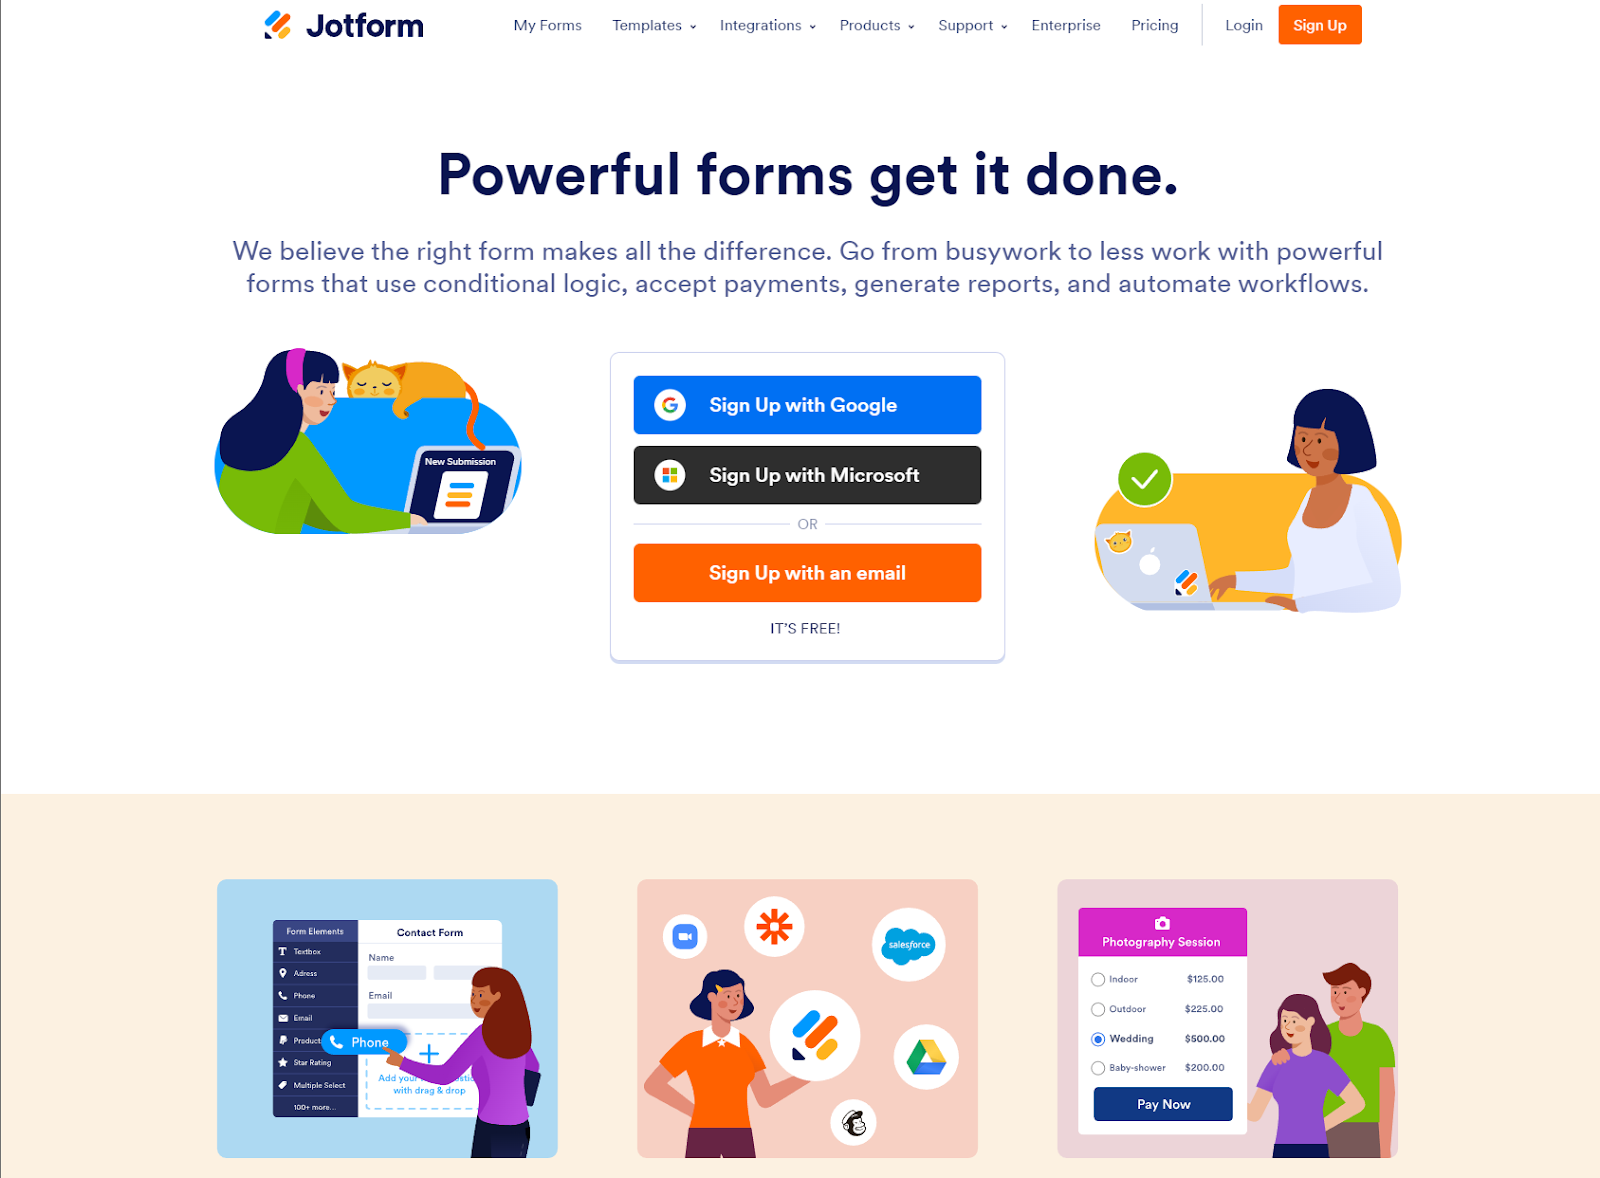 Best Survey Tools: JotForm